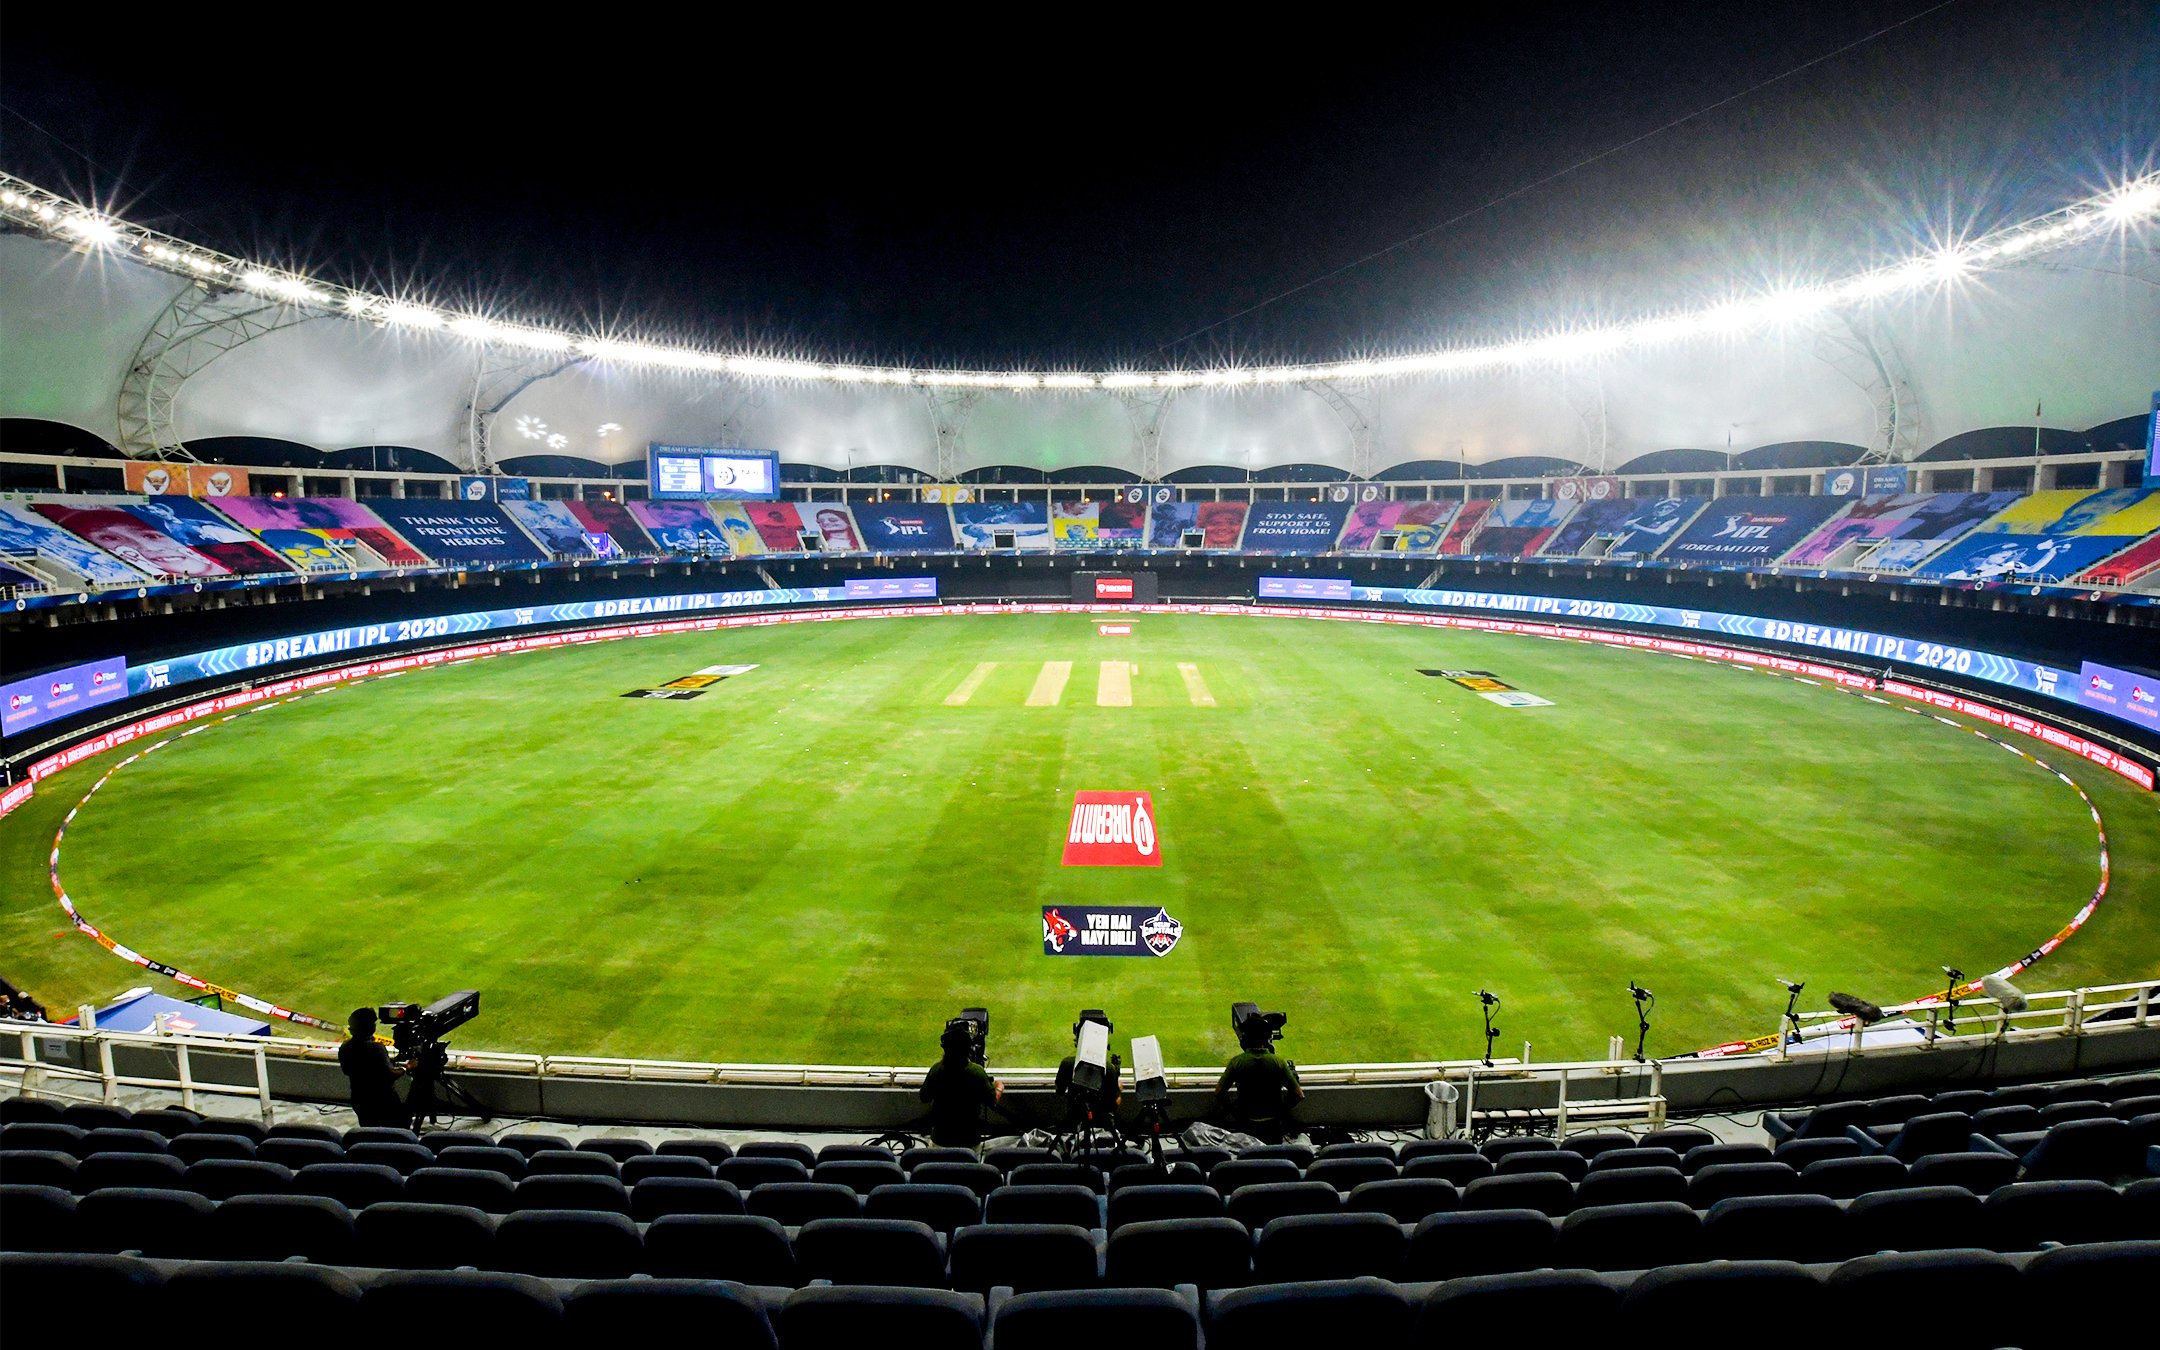 दुबई आंतरराष्ट्रीय क्रिकेट स्टेडियमवर होणारा हा सामना सायंकाळी ७.३० वाजता  स्टार स्पोर्ट्स १, स्टार स्पोर्ट्स १ हिंदी, स्टार स्पोर्ट्स सिलेक्ट १ (संबंधित एचडी) वहिन्यांवर पाहता येणार आहे.